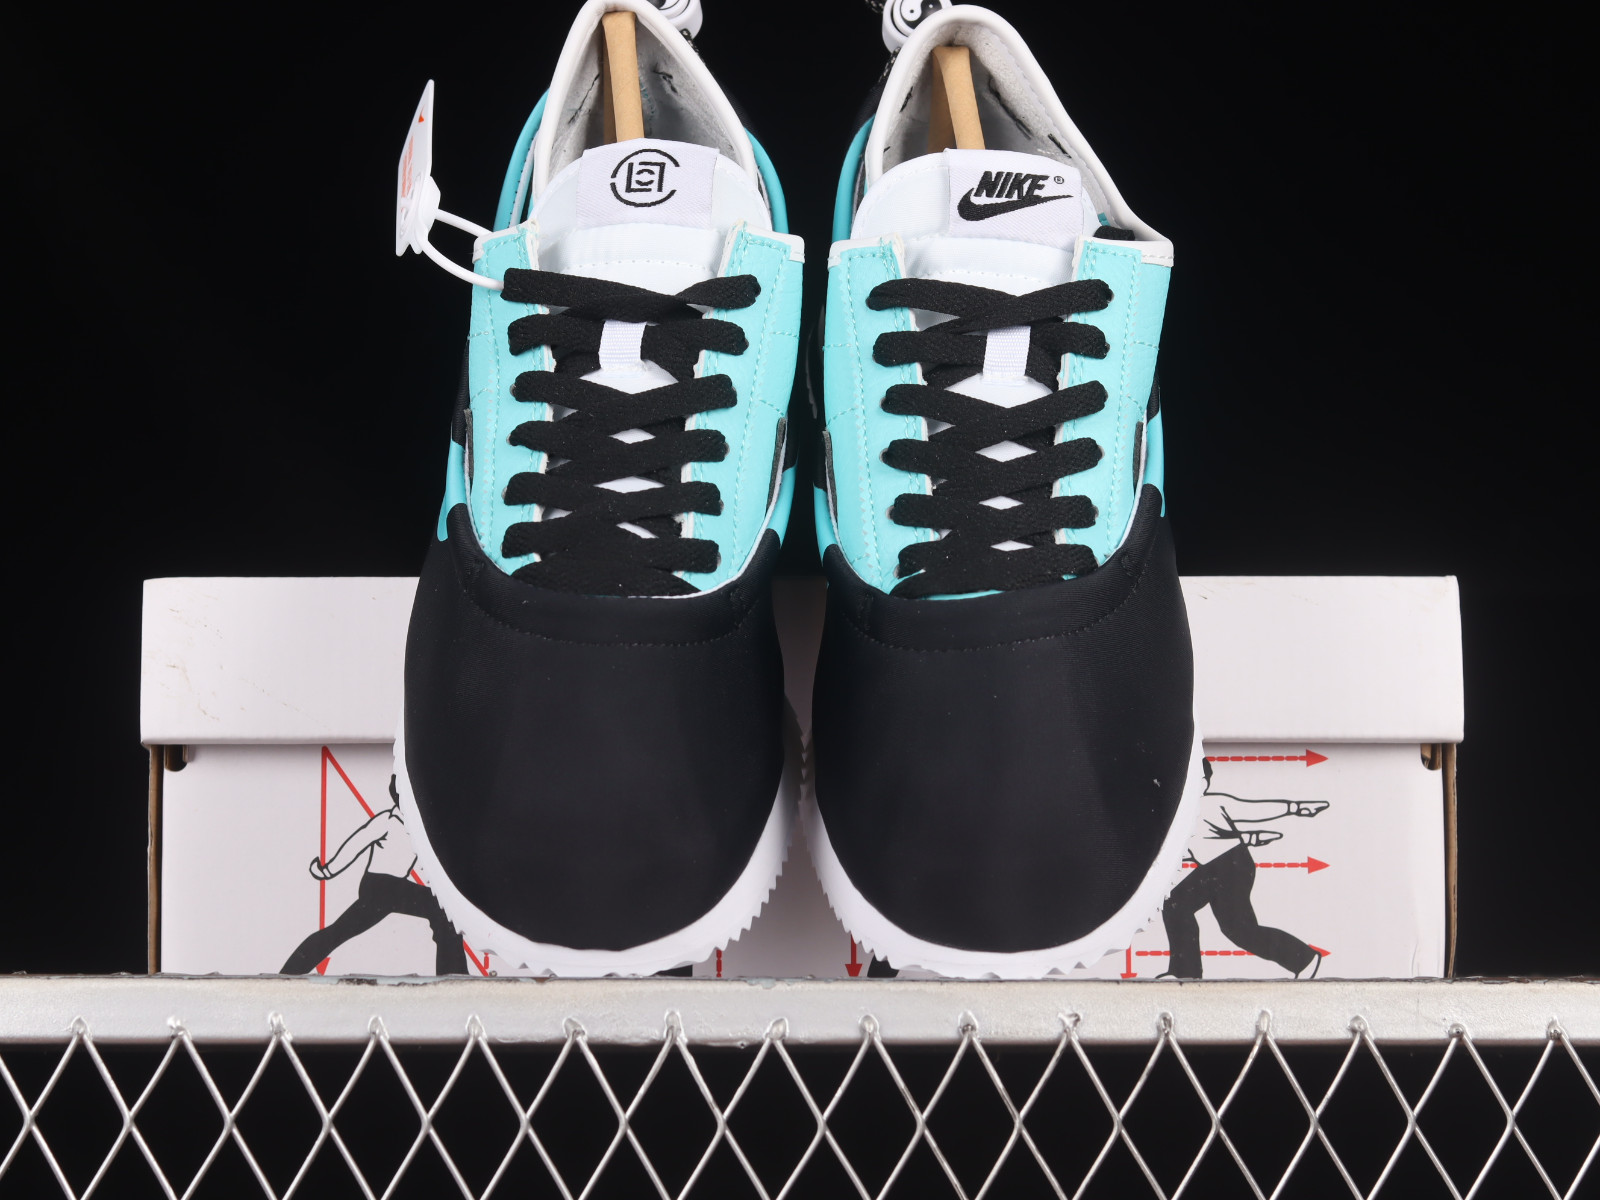 shoes similar to straps nike zoom elite 9 - Clot x straps Nike